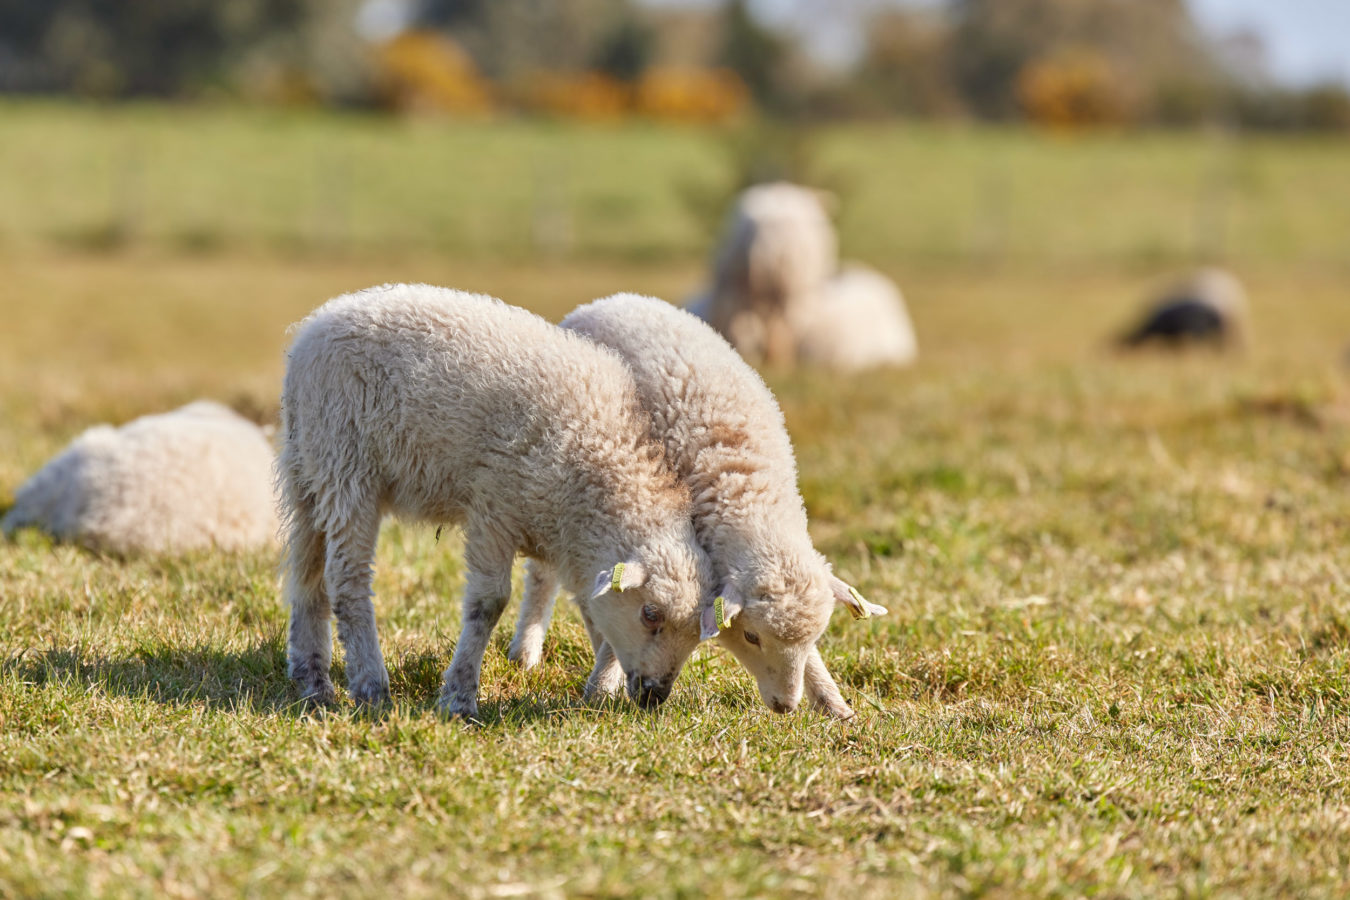 Coussins feutre de laine collection CAIRN – Heloise Levieux